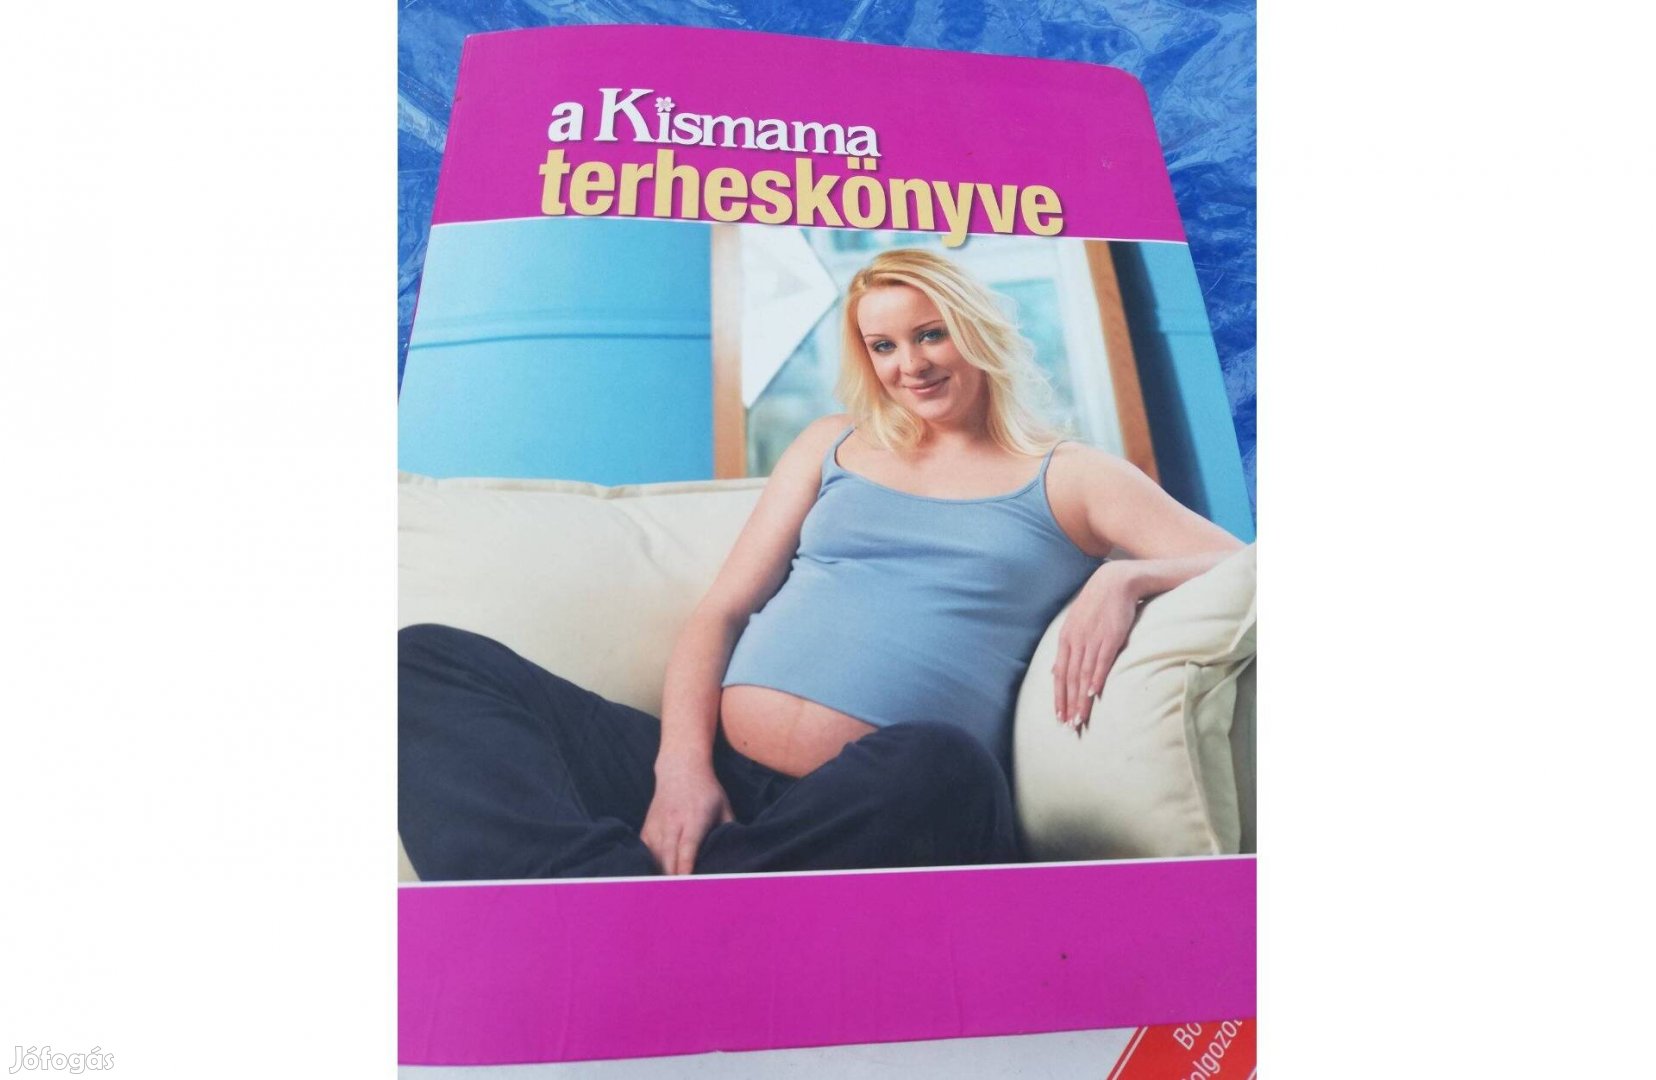 A kismama terheskönyve c. könyv 800 forintért